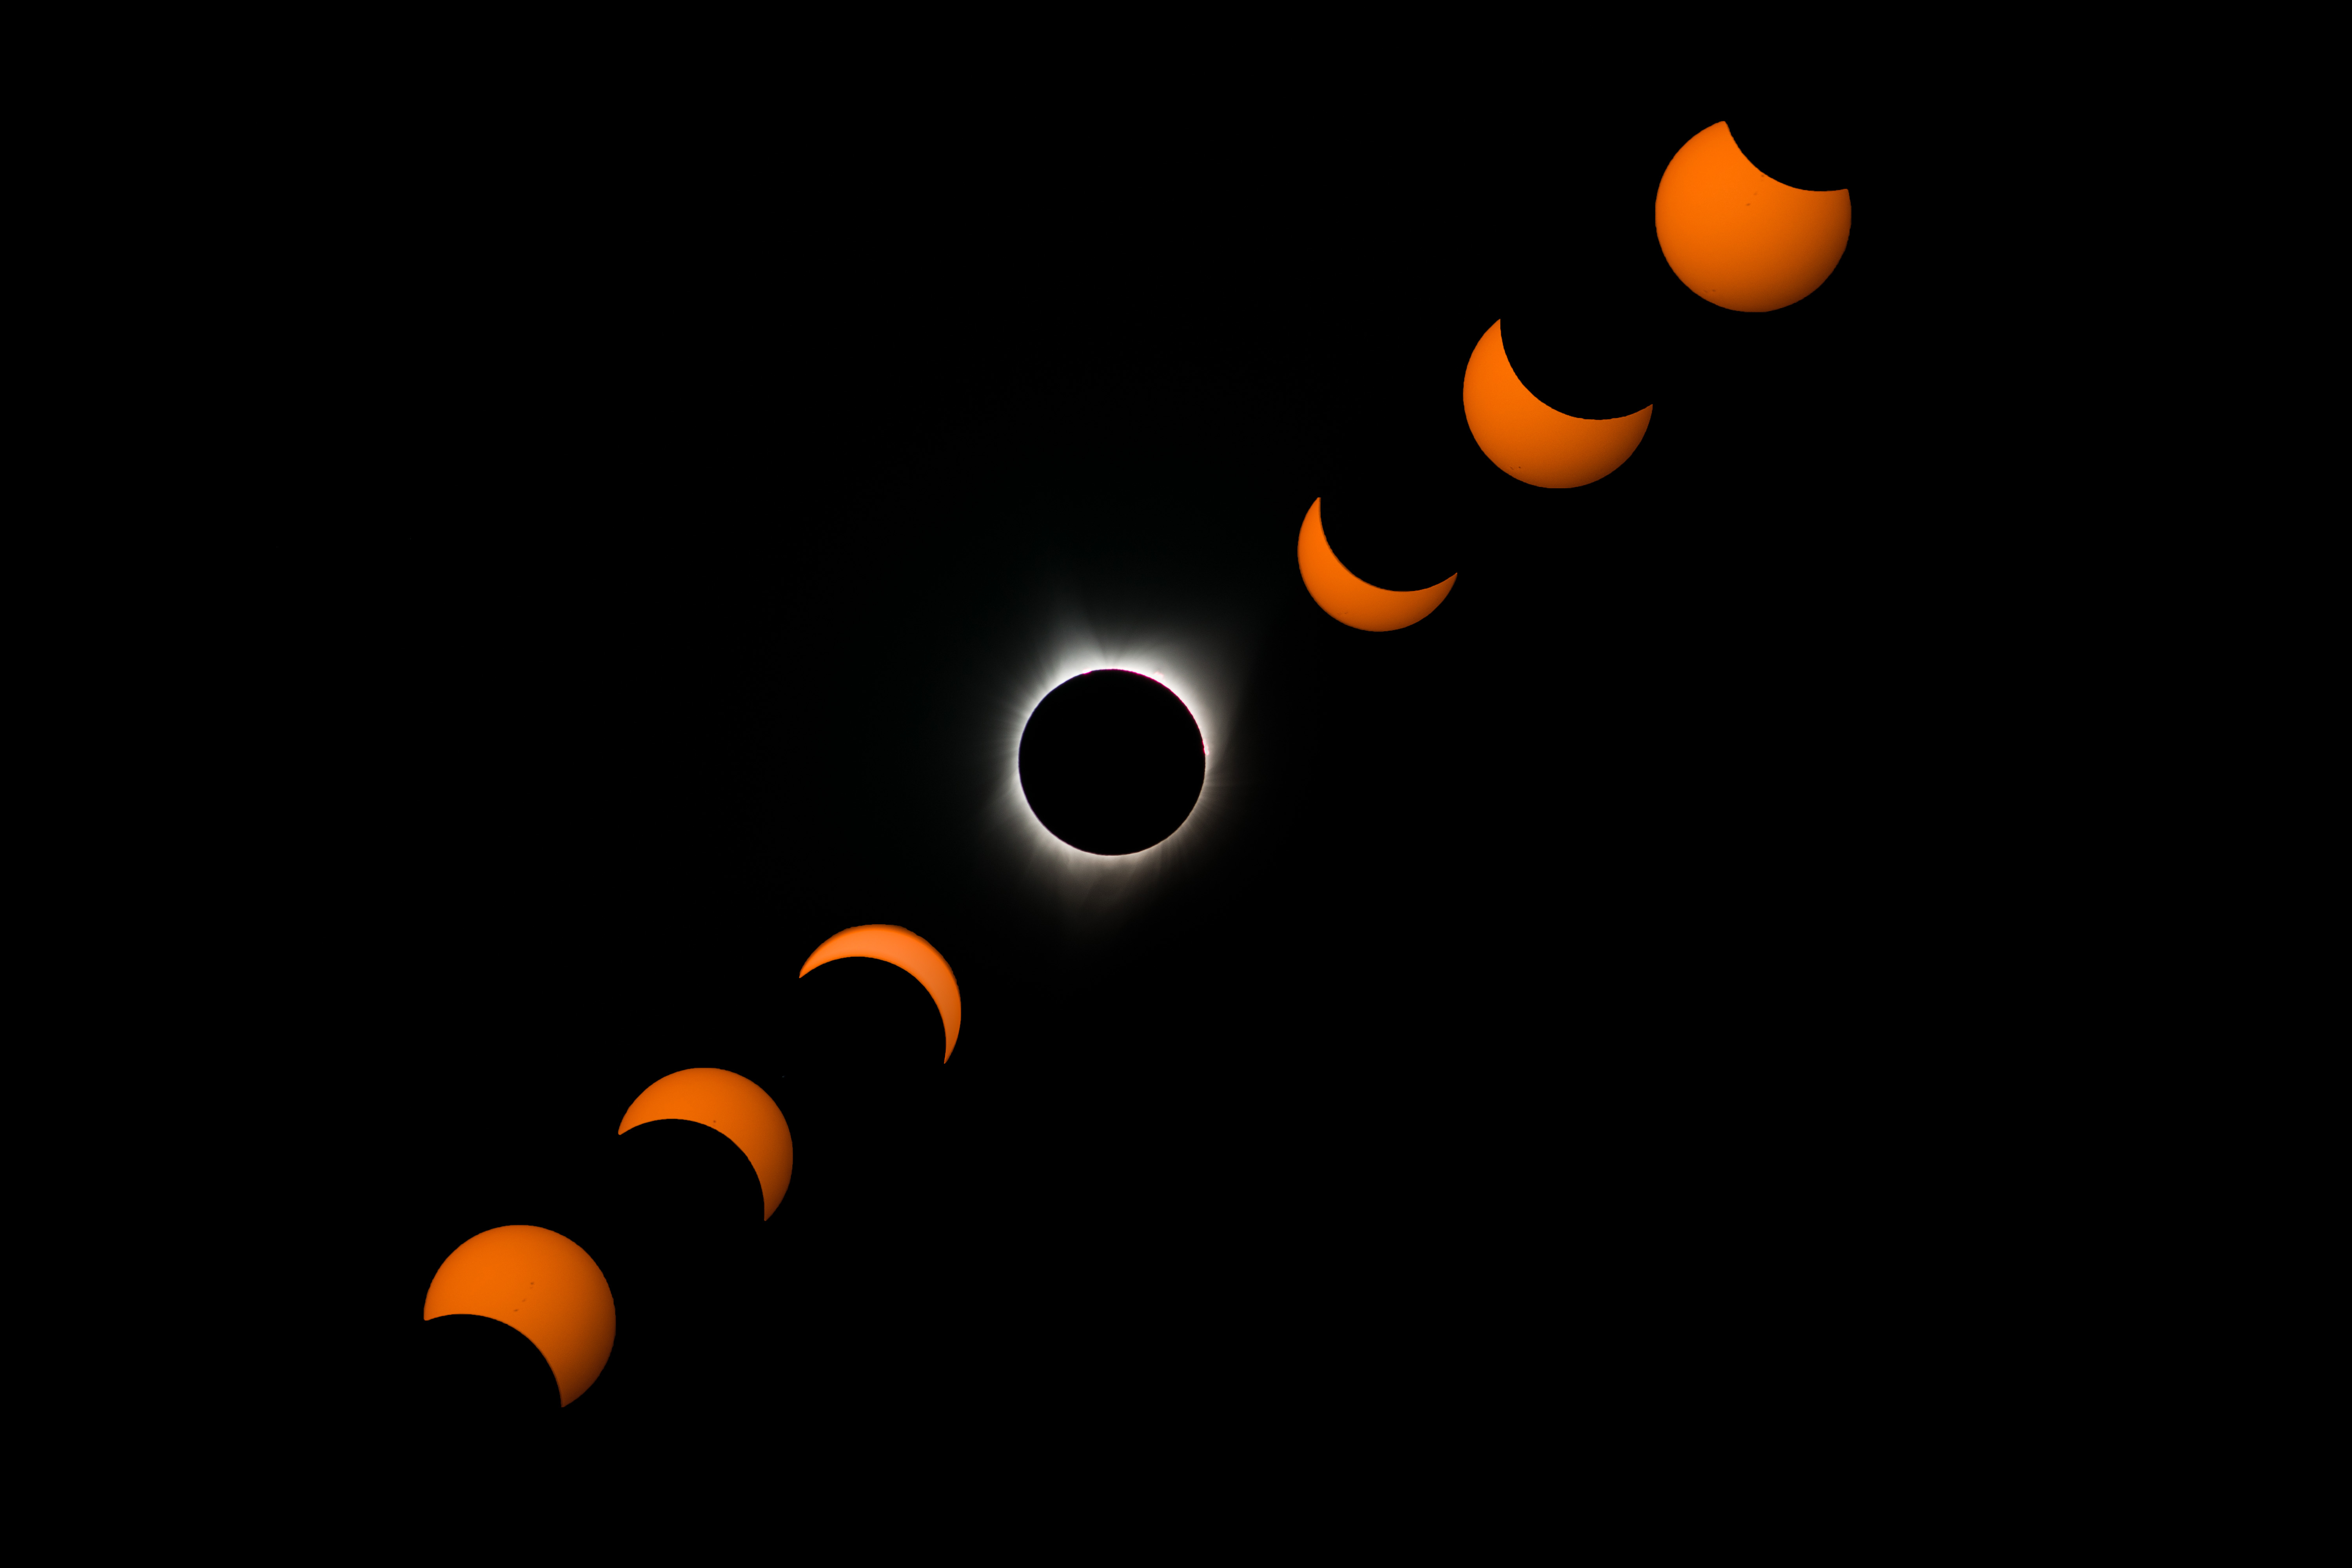 Fotografia dell'eclissi solare